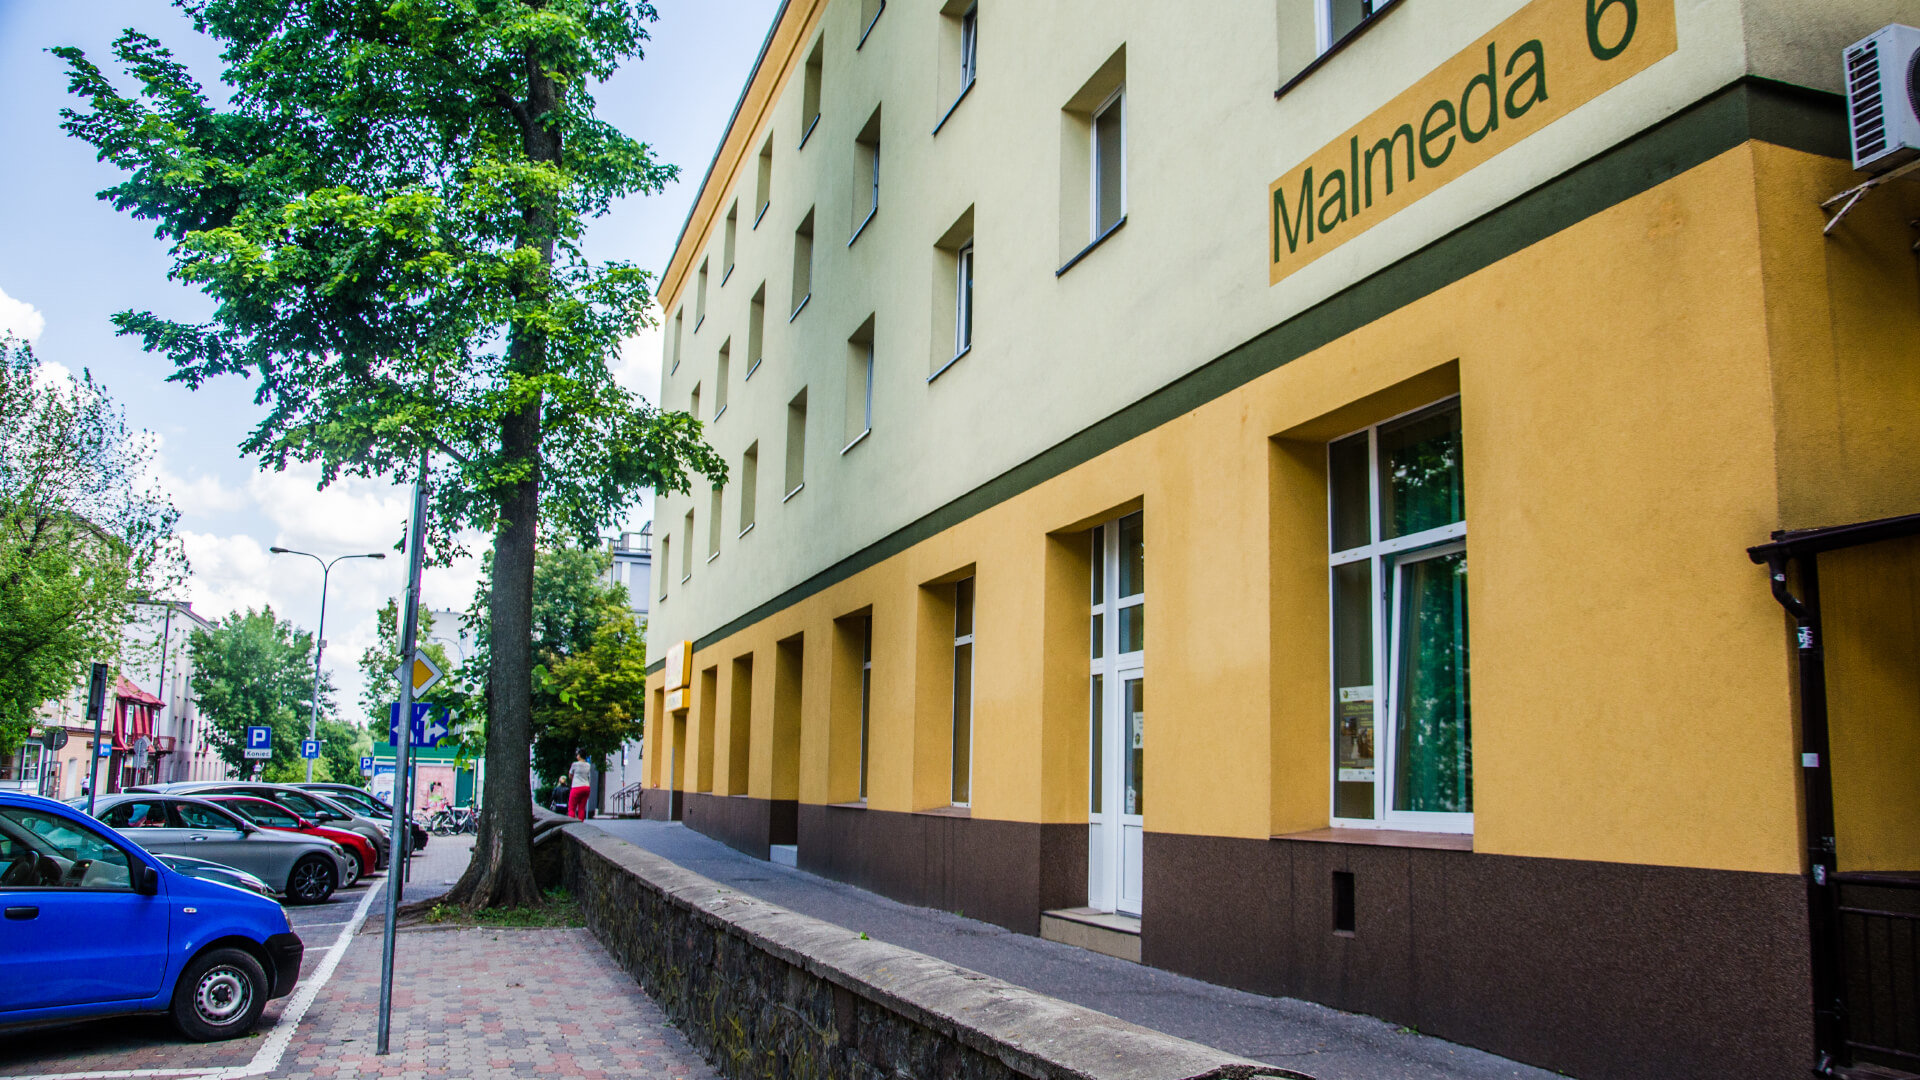 Apartament Centrum Malmeda (Białystok)